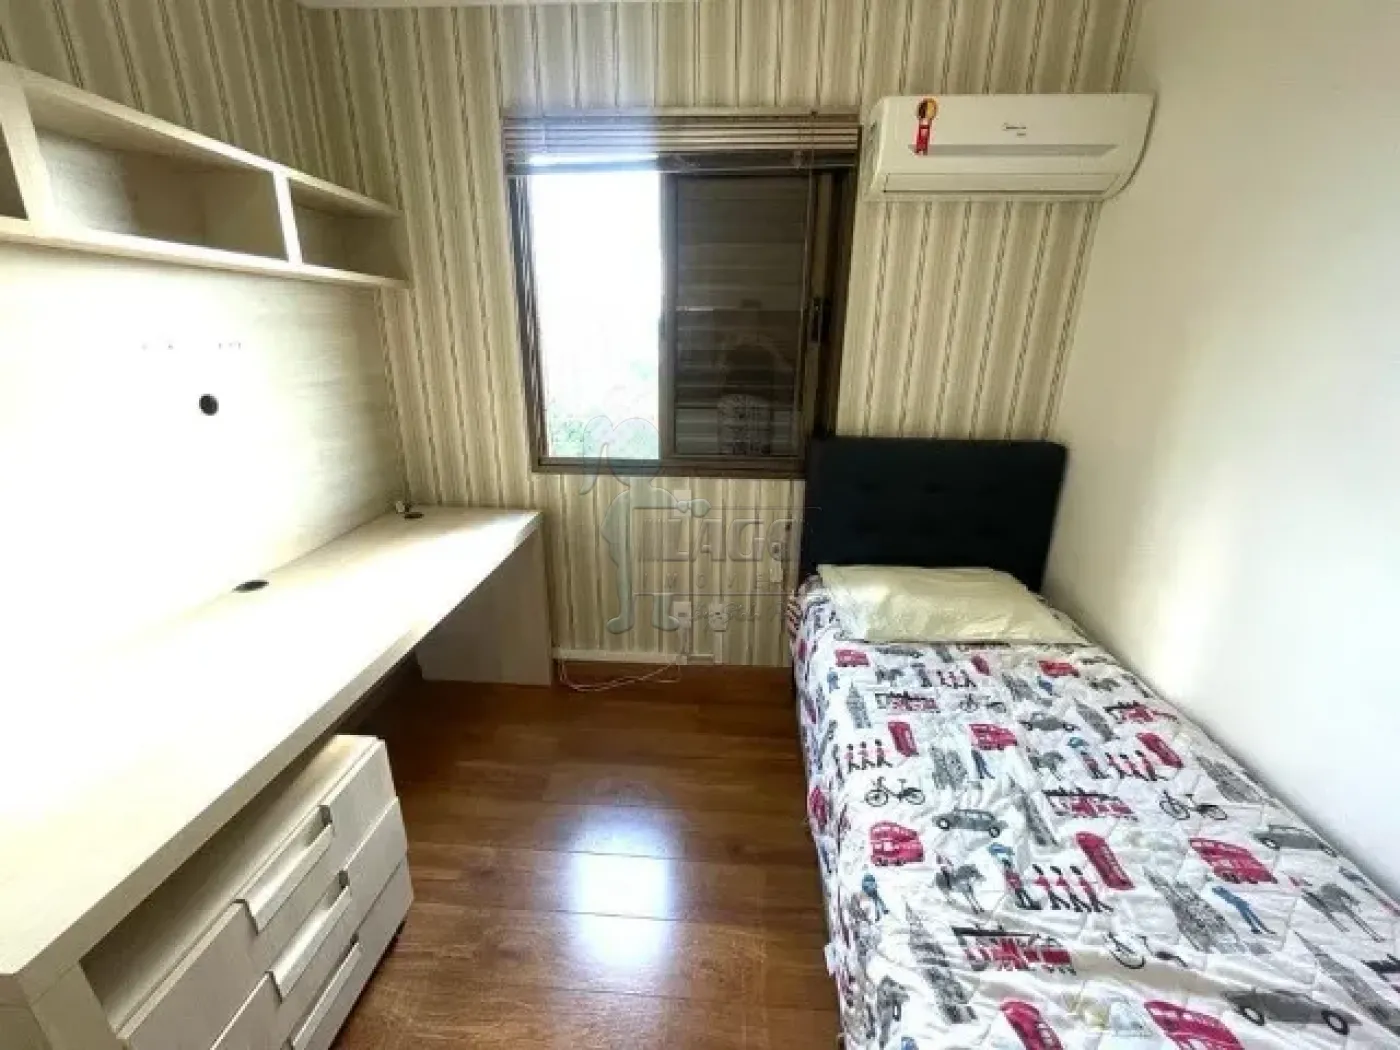 Alugar Apartamentos / Padrão em Ribeirão Preto R$ 2.900,00 - Foto 14